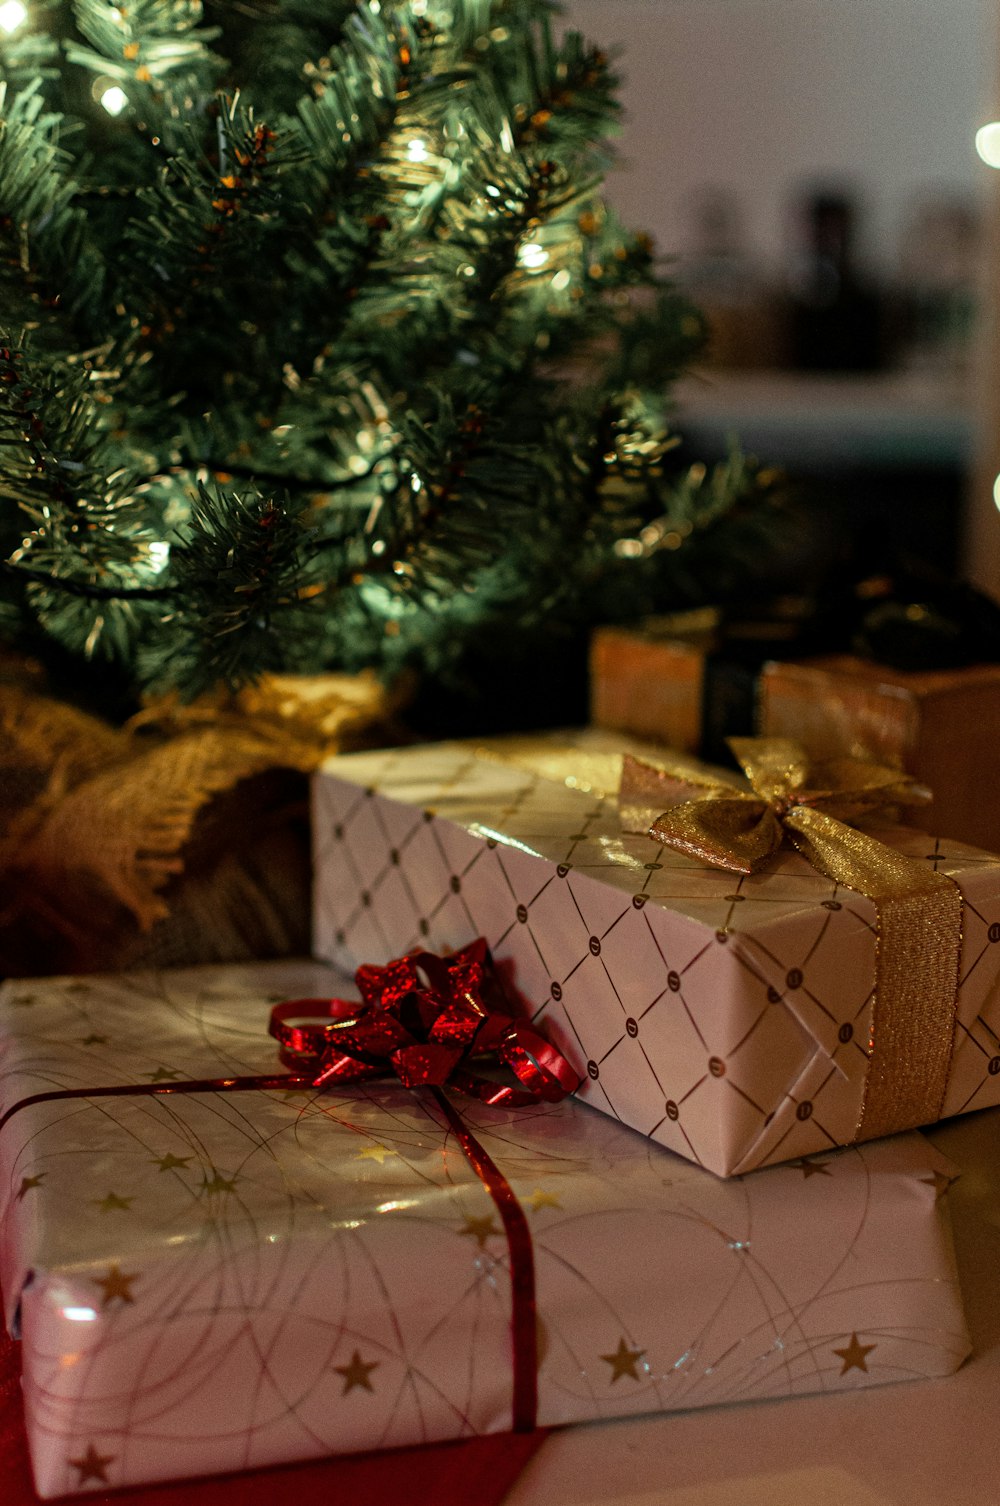 Braun-weiße Geschenkboxen neben grünem Weihnachtsbaum